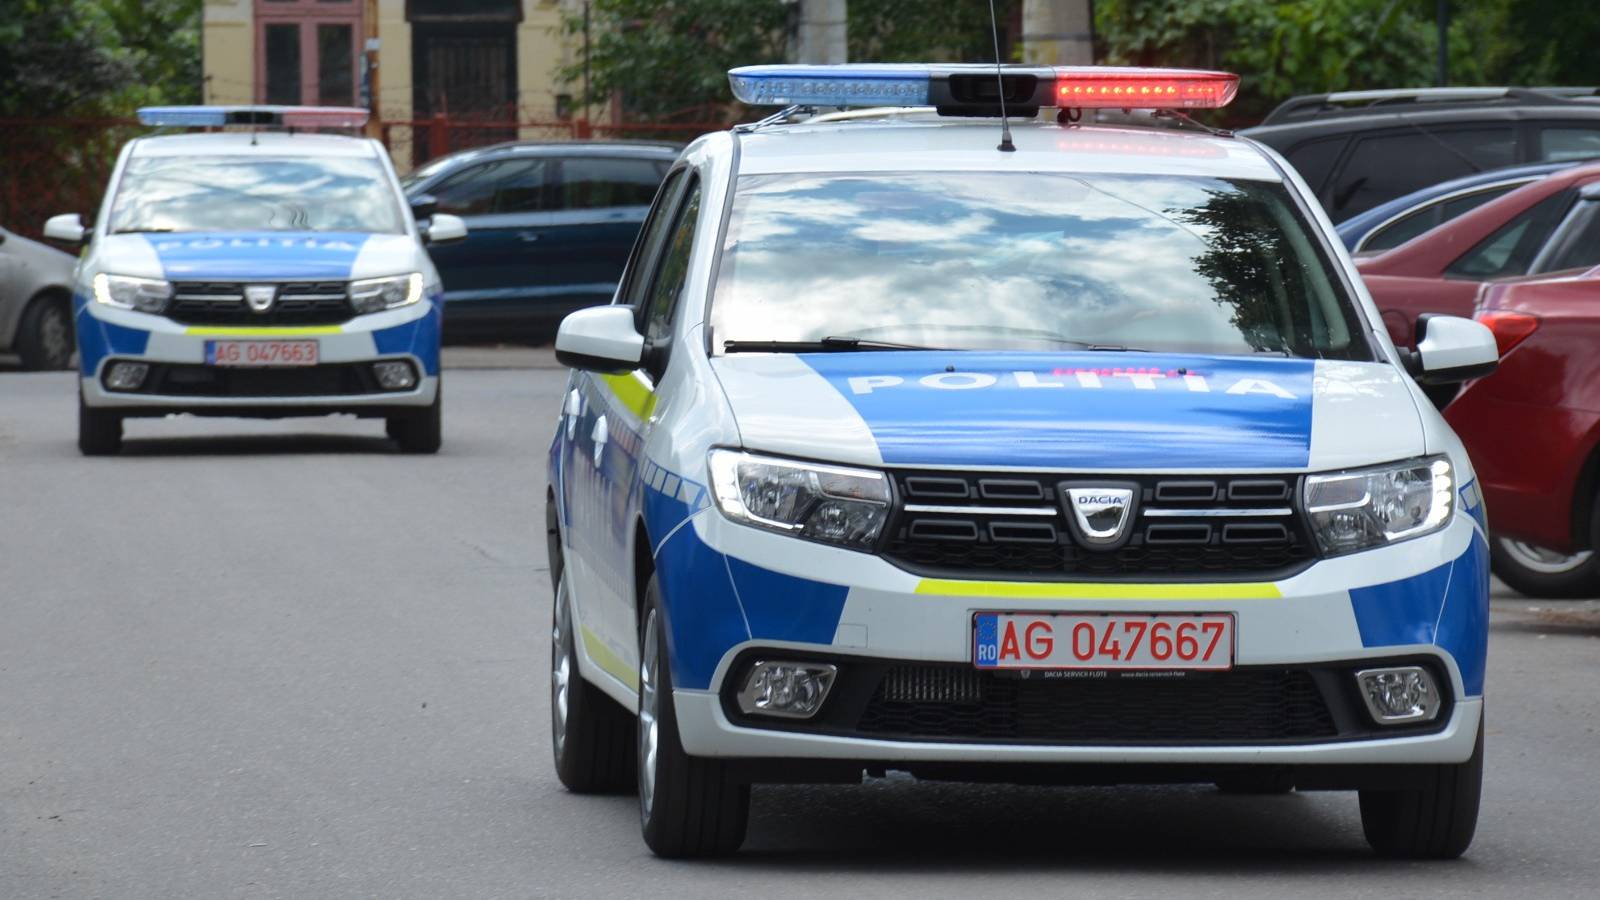 Advarsel fra det rumænske politi til radarbilister